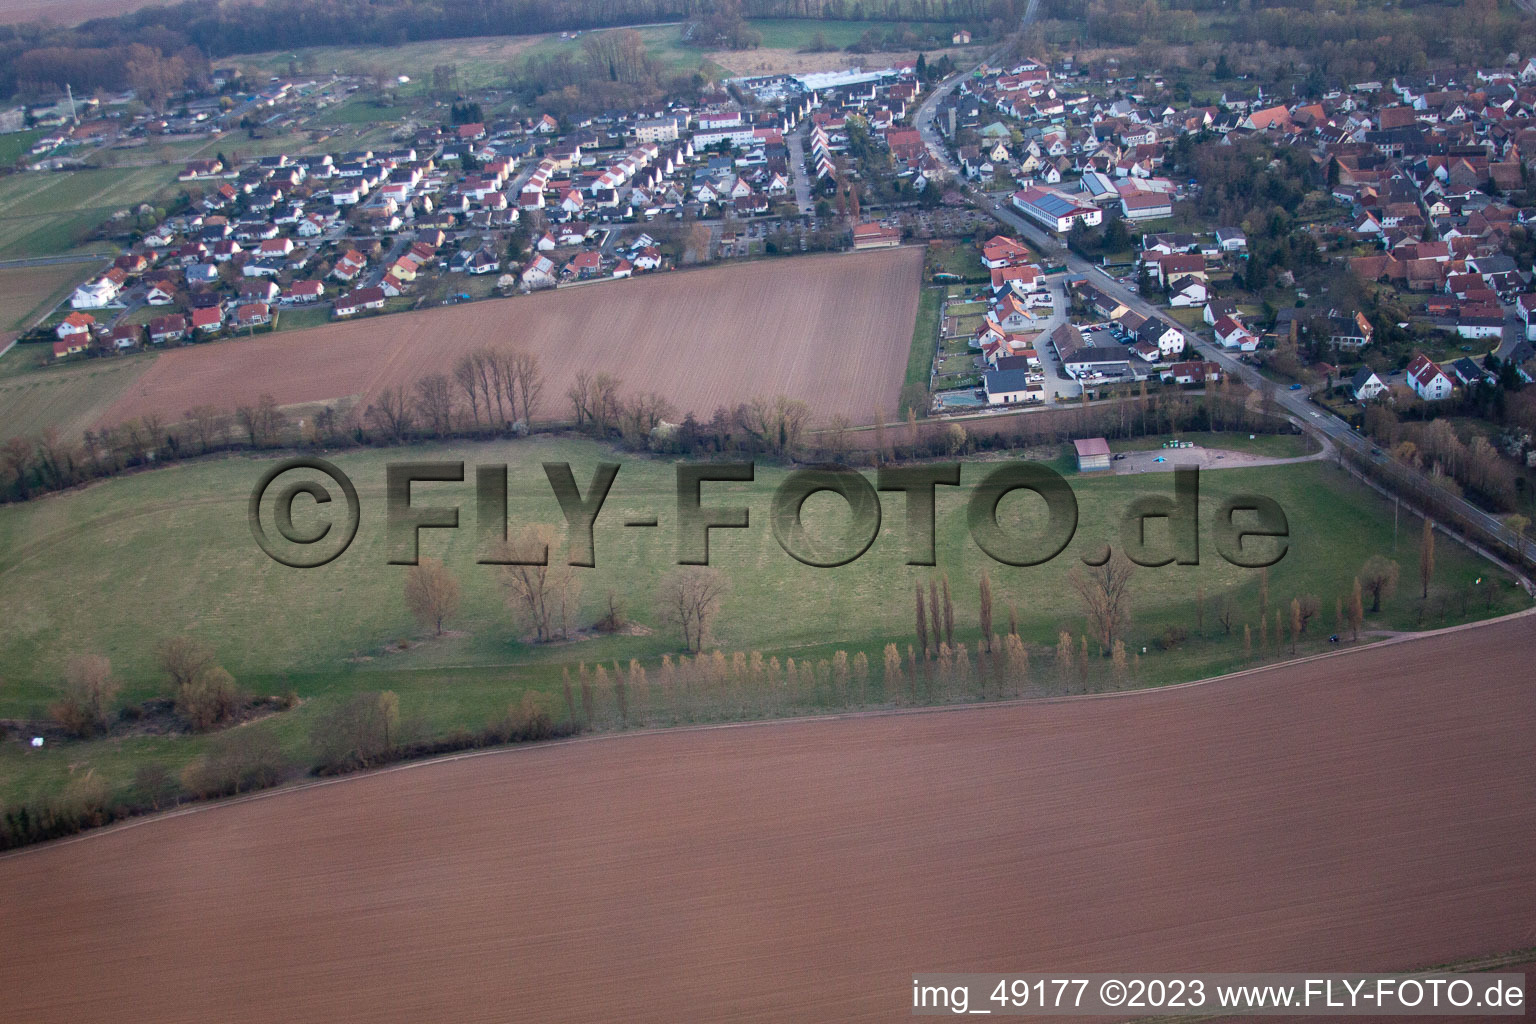 Luftbild von Billigheim, Rennbahn in Billigheim-Ingenheim im Bundesland Rheinland-Pfalz, Deutschland